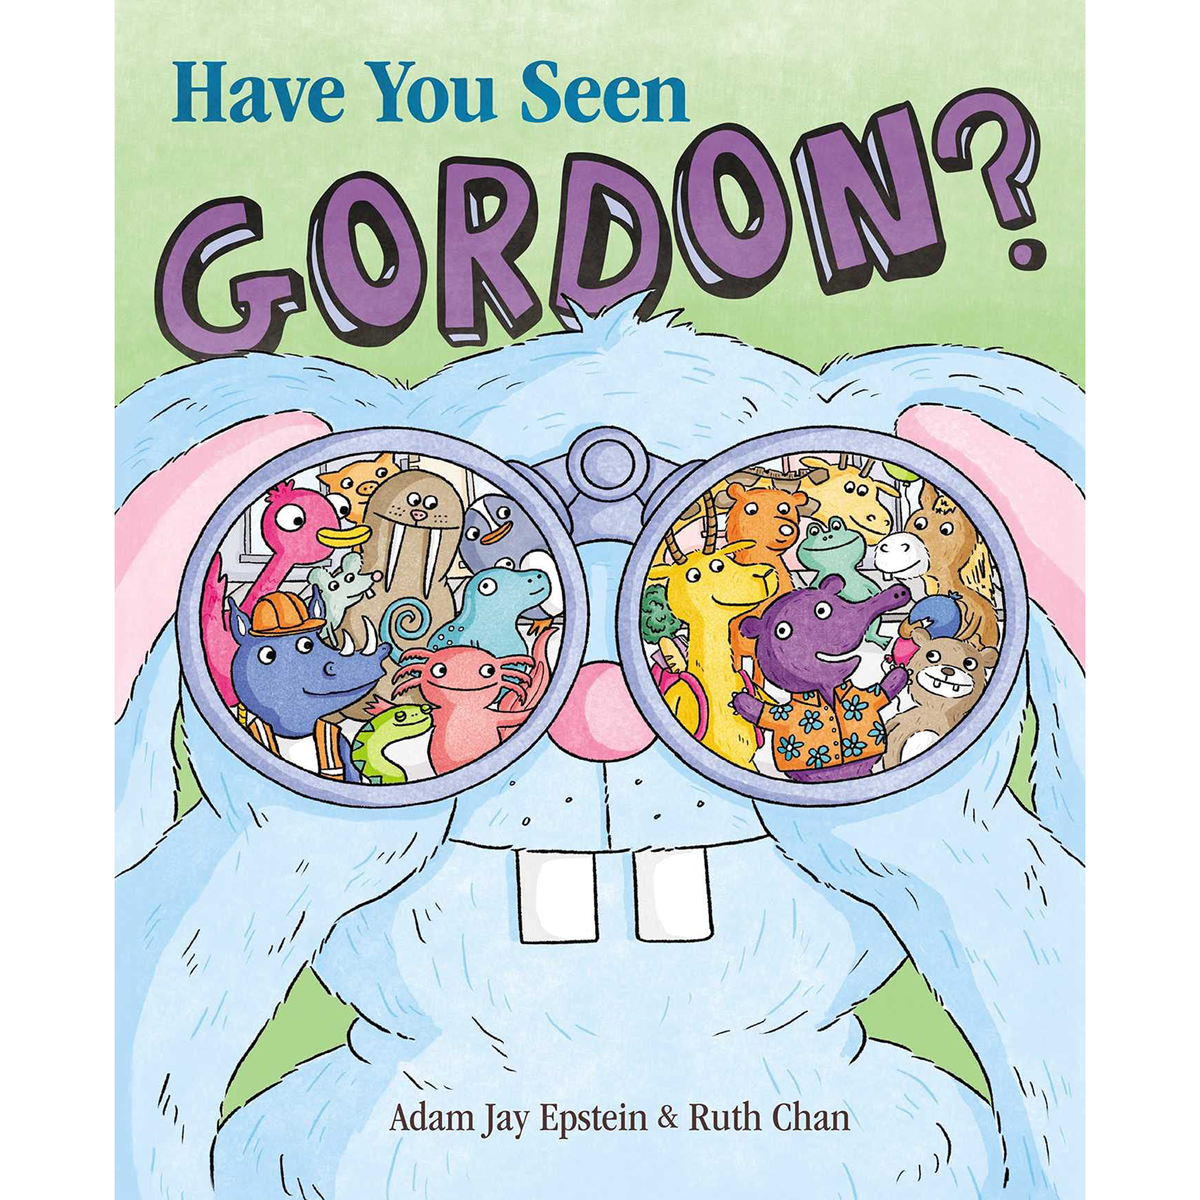 Have You Seen Gordon?